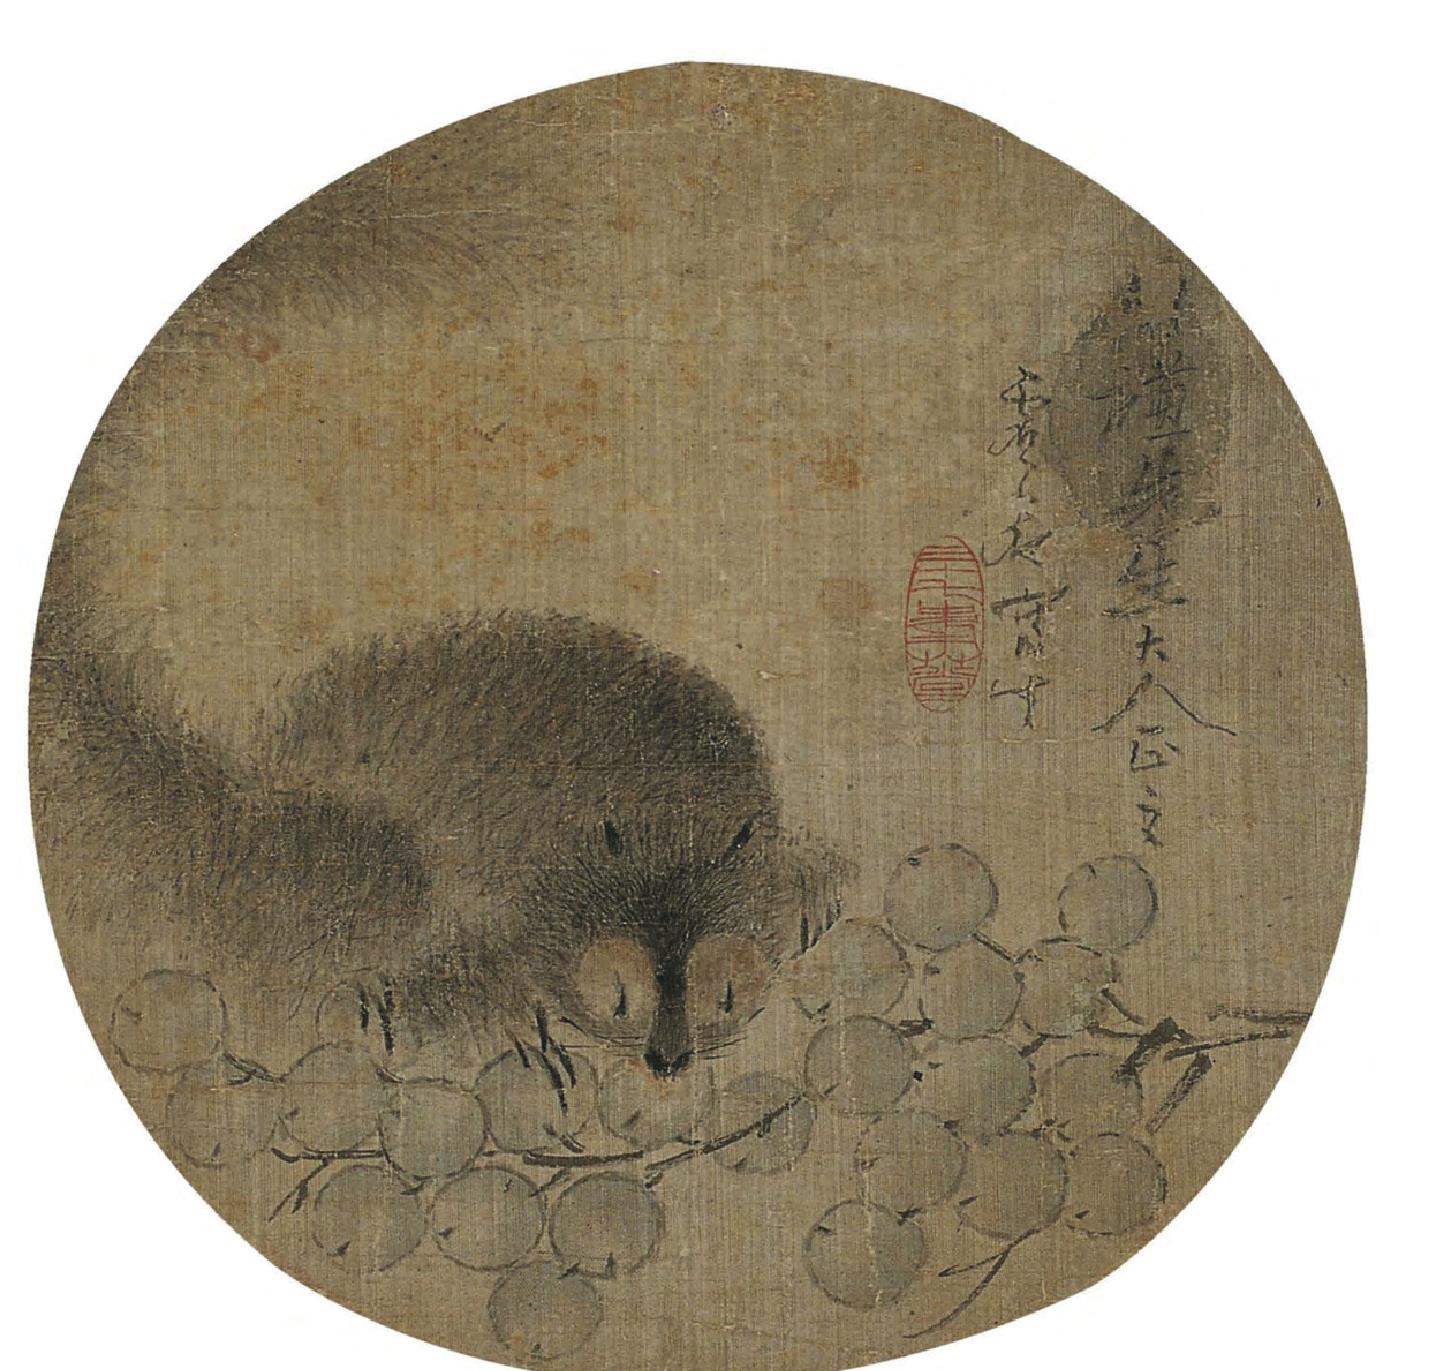 第二节 清民国时期的佛教绘画